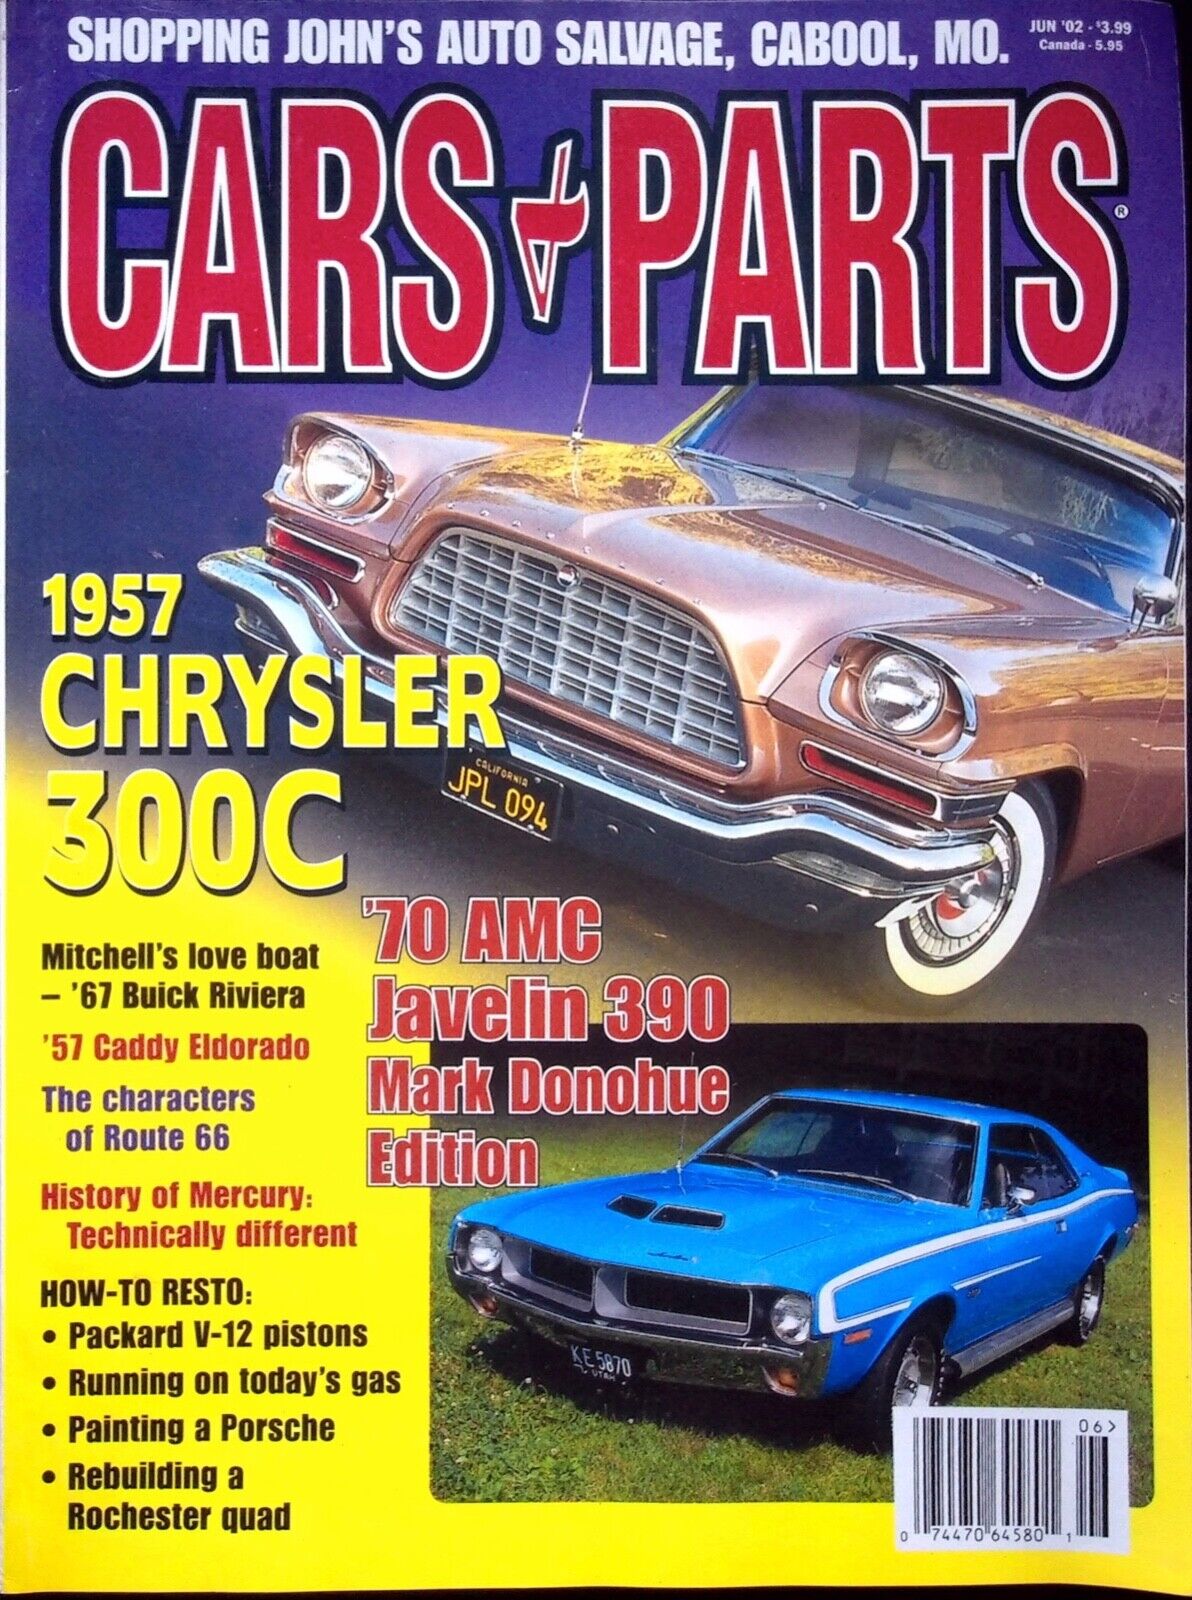 VINTAGE 1957 CHRYSLER 300C - CARS & PARTS MAGAZINE, VOL. 45 - NO. 6. JUNE 2002